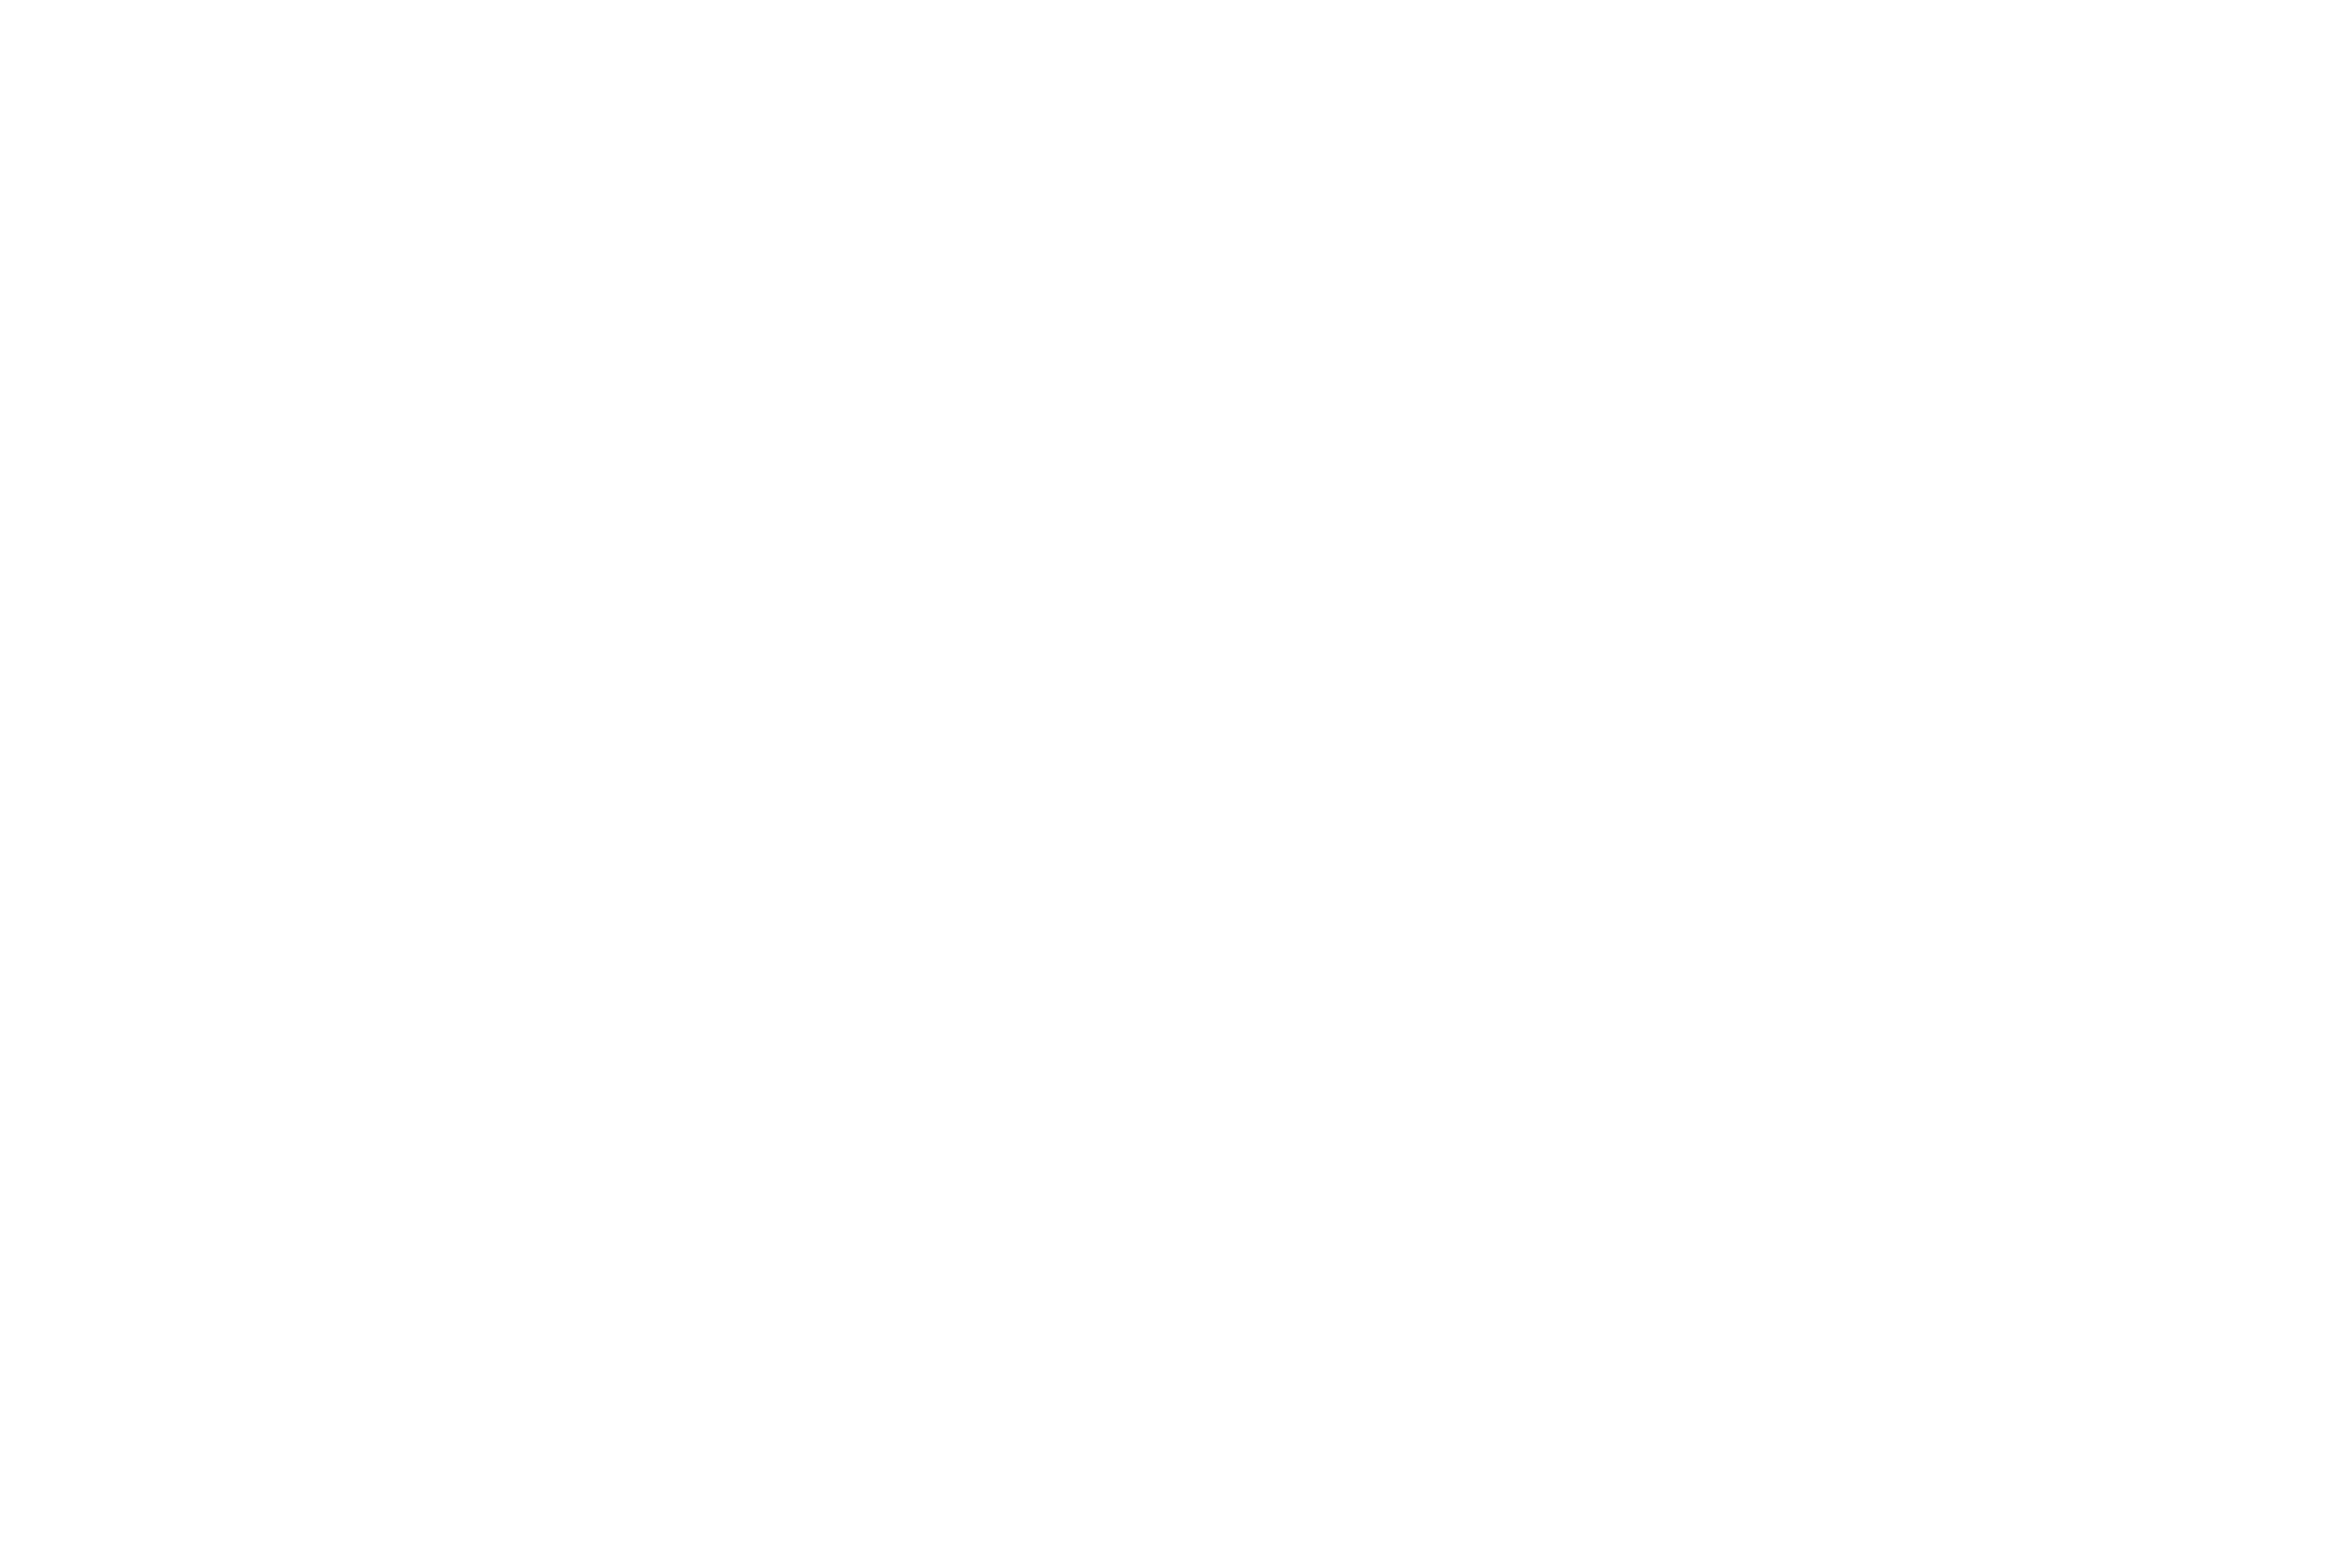 Chef Victoria Blamey